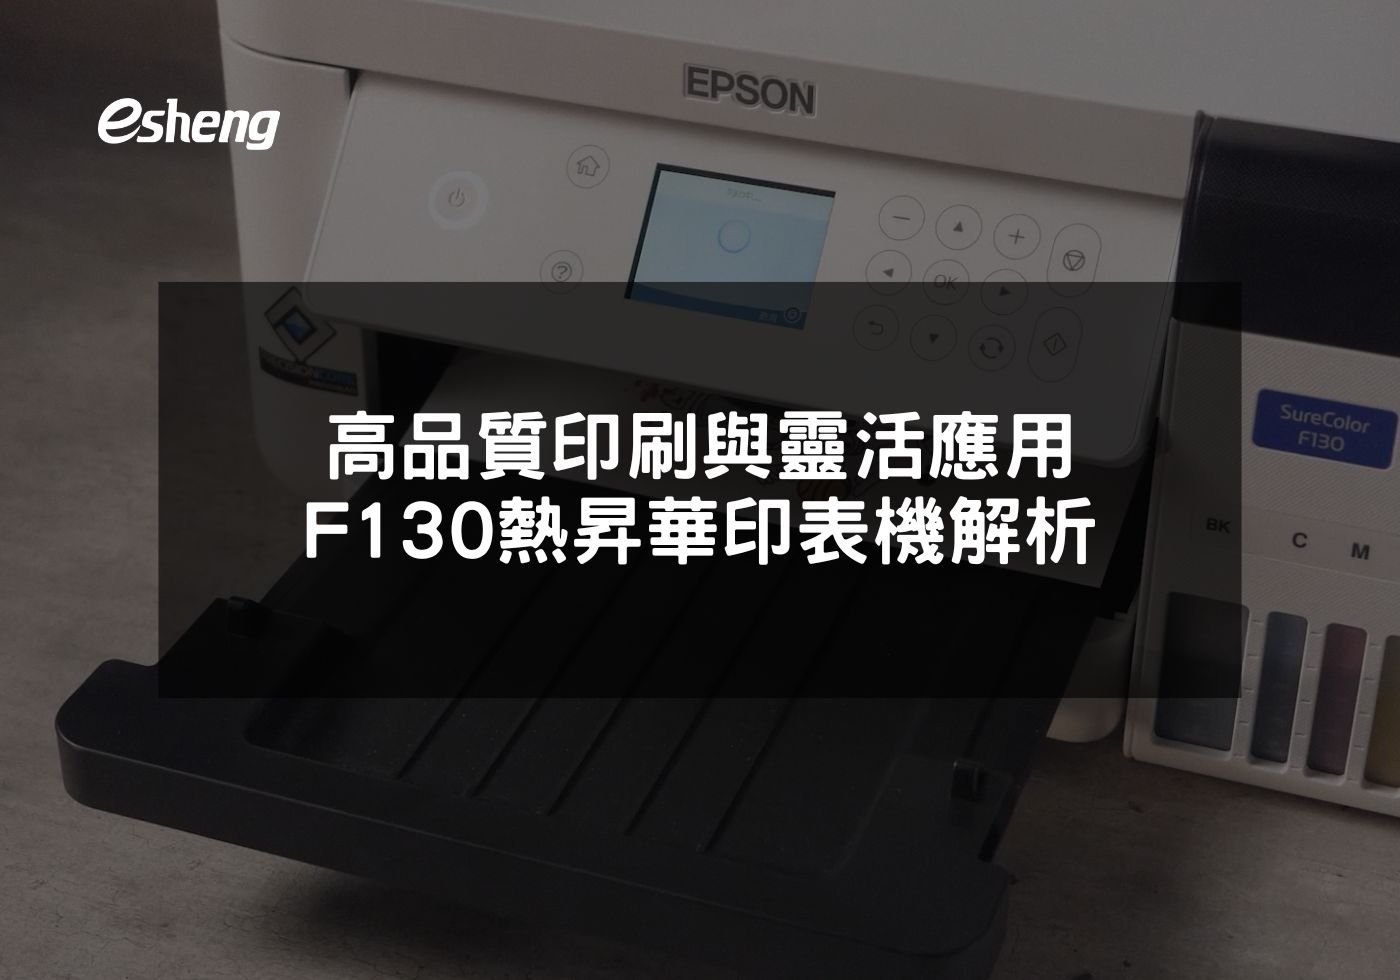 高品質印刷與靈活應用 EPSON F130 熱昇華印表機解析